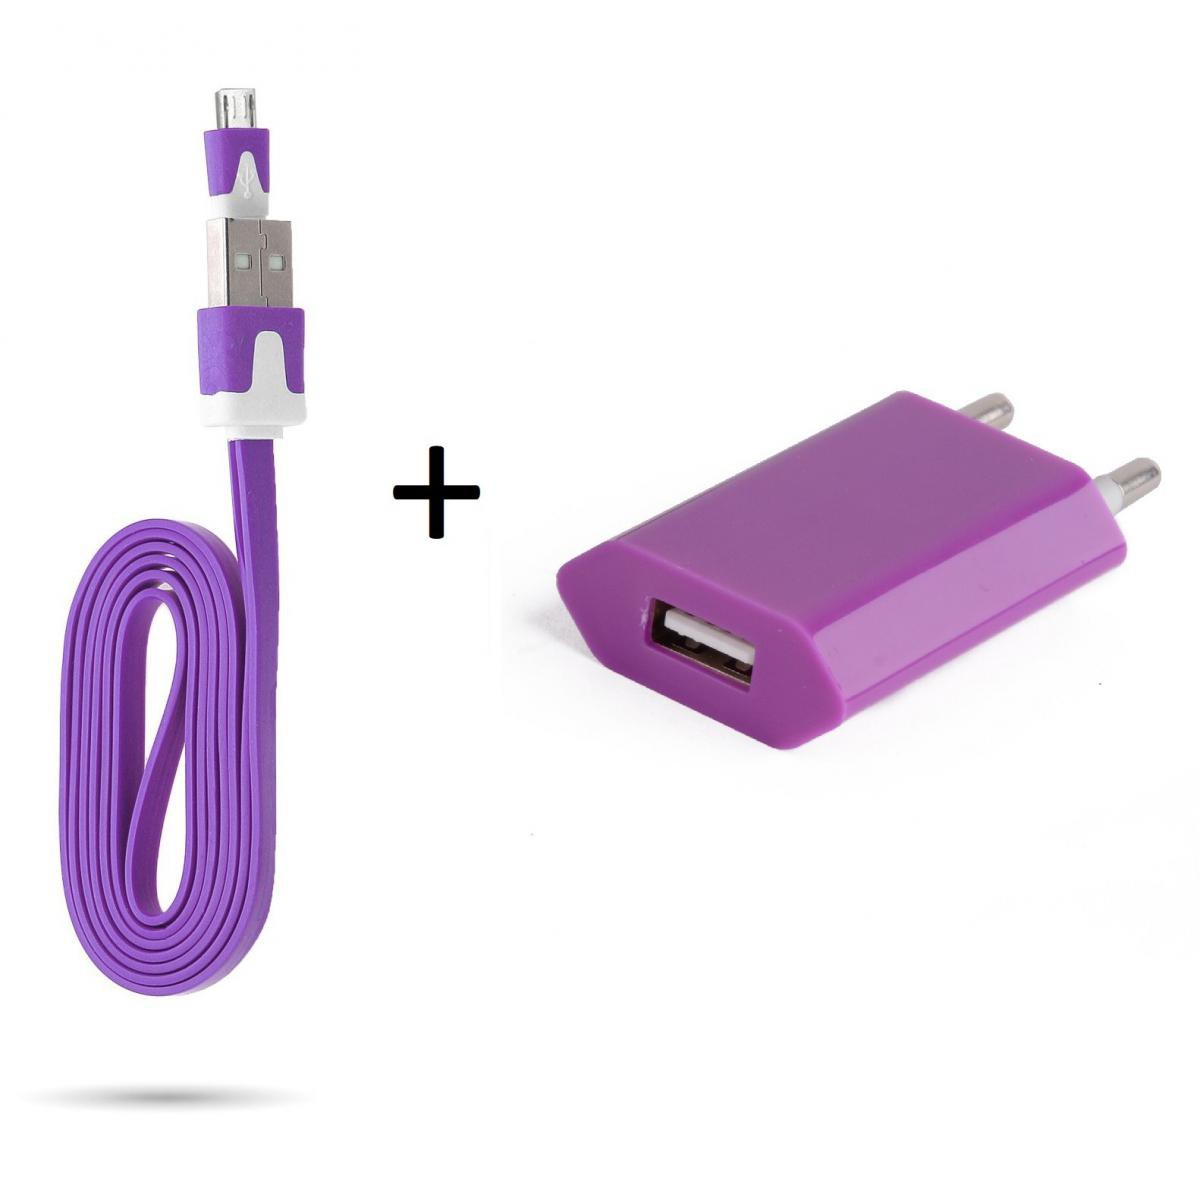 Shot - Cable Noodle 1m Chargeur + Prise Secteur pour "WIKO Y61" Smartphone Micro USB Murale Pack Android (VIOLET) - Chargeur secteur téléphone